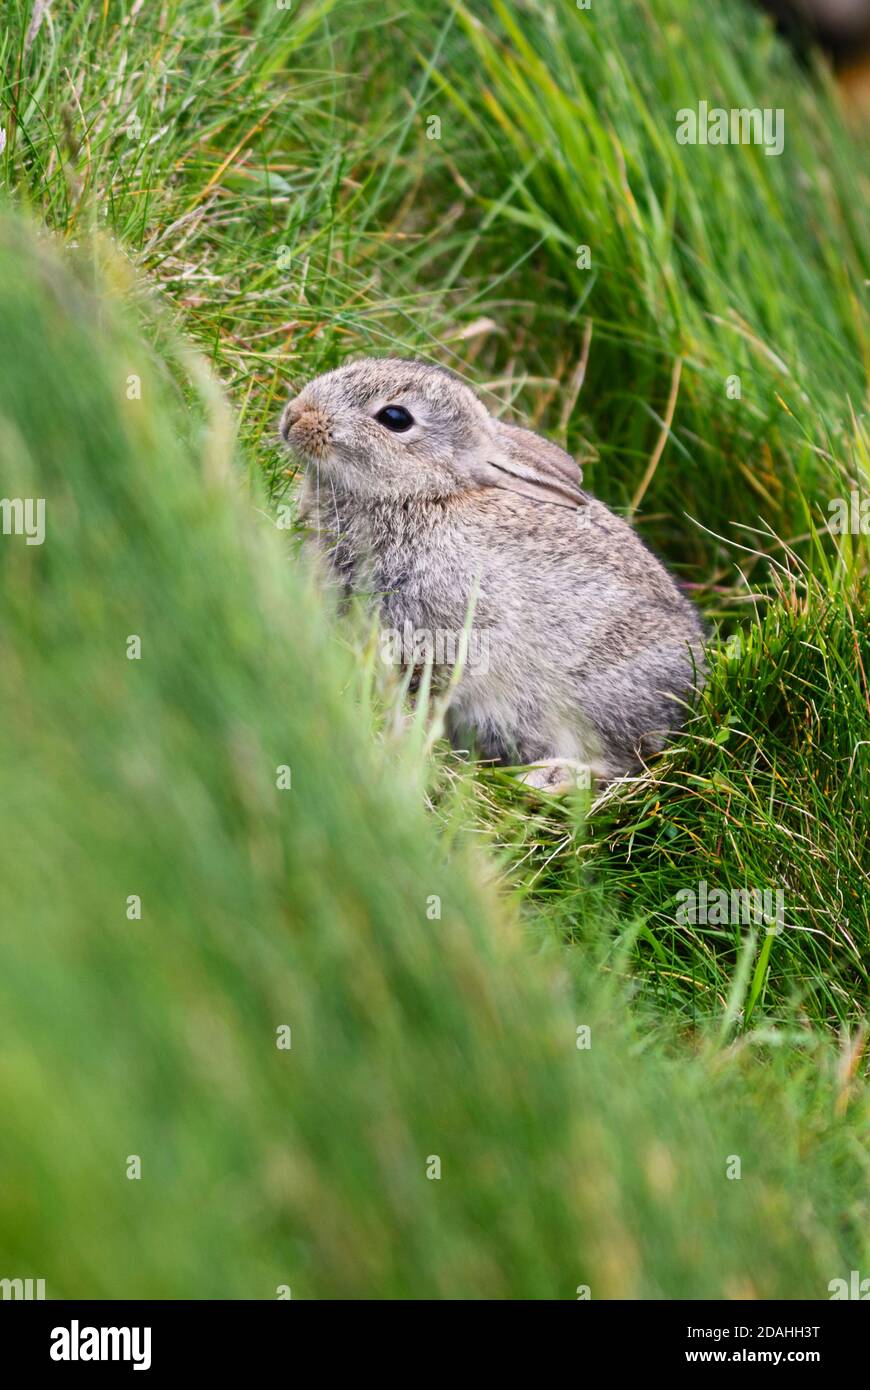 European Rabbit - Oryctolagus cuniculus, niedliches kleines Säugetier aus europäischen Wiesen und Weiden, Shetlands, Scotlank, UK. Stockfoto